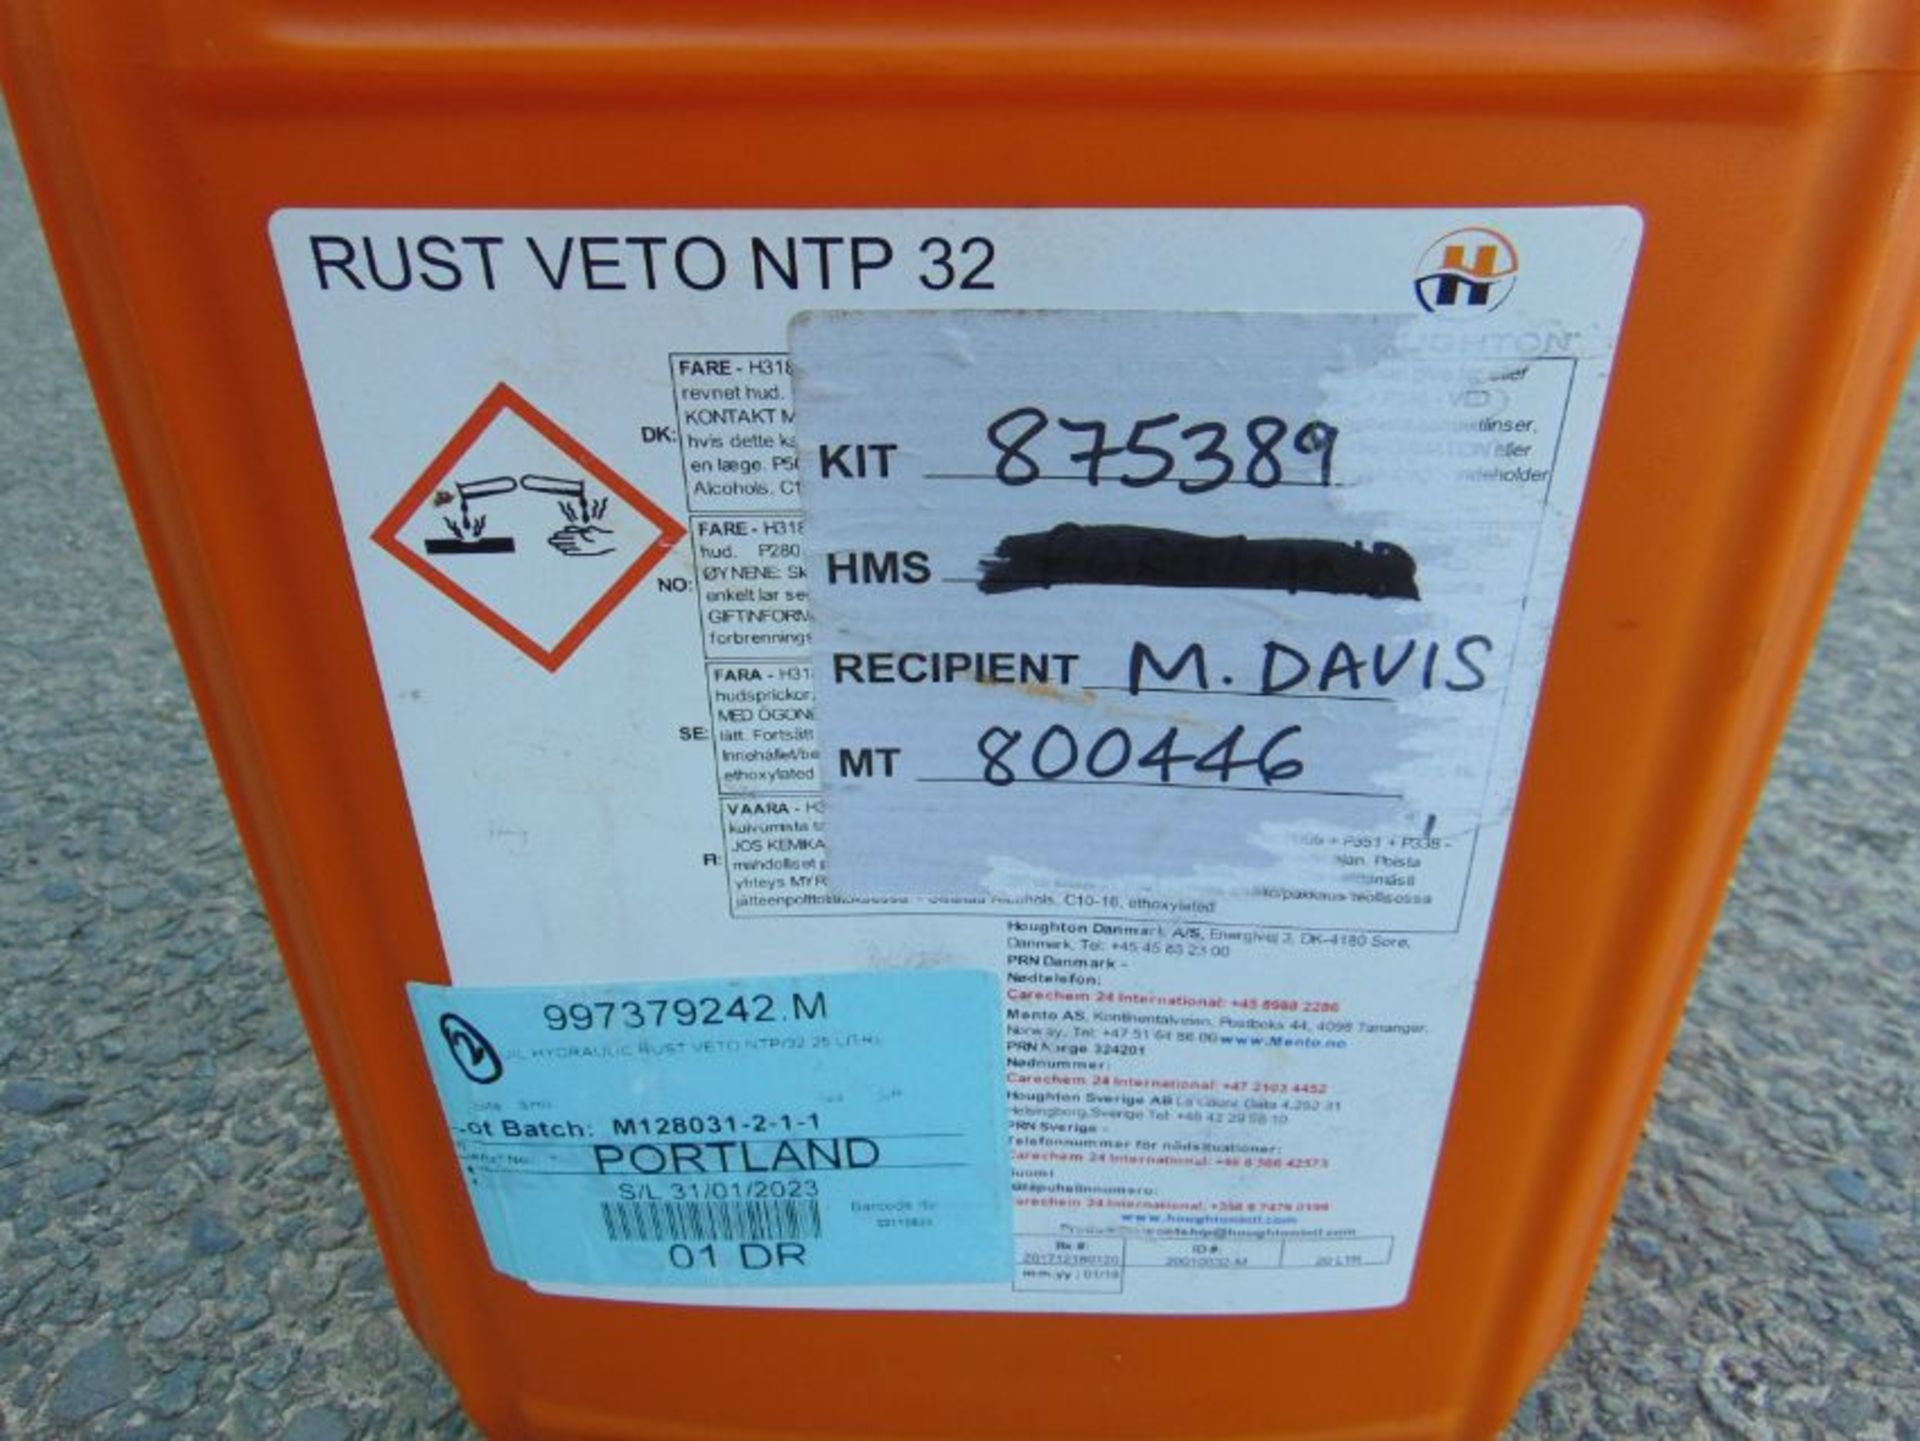 1x 20 litre Drum of Rust Veto NTP 32 - Image 2 of 2